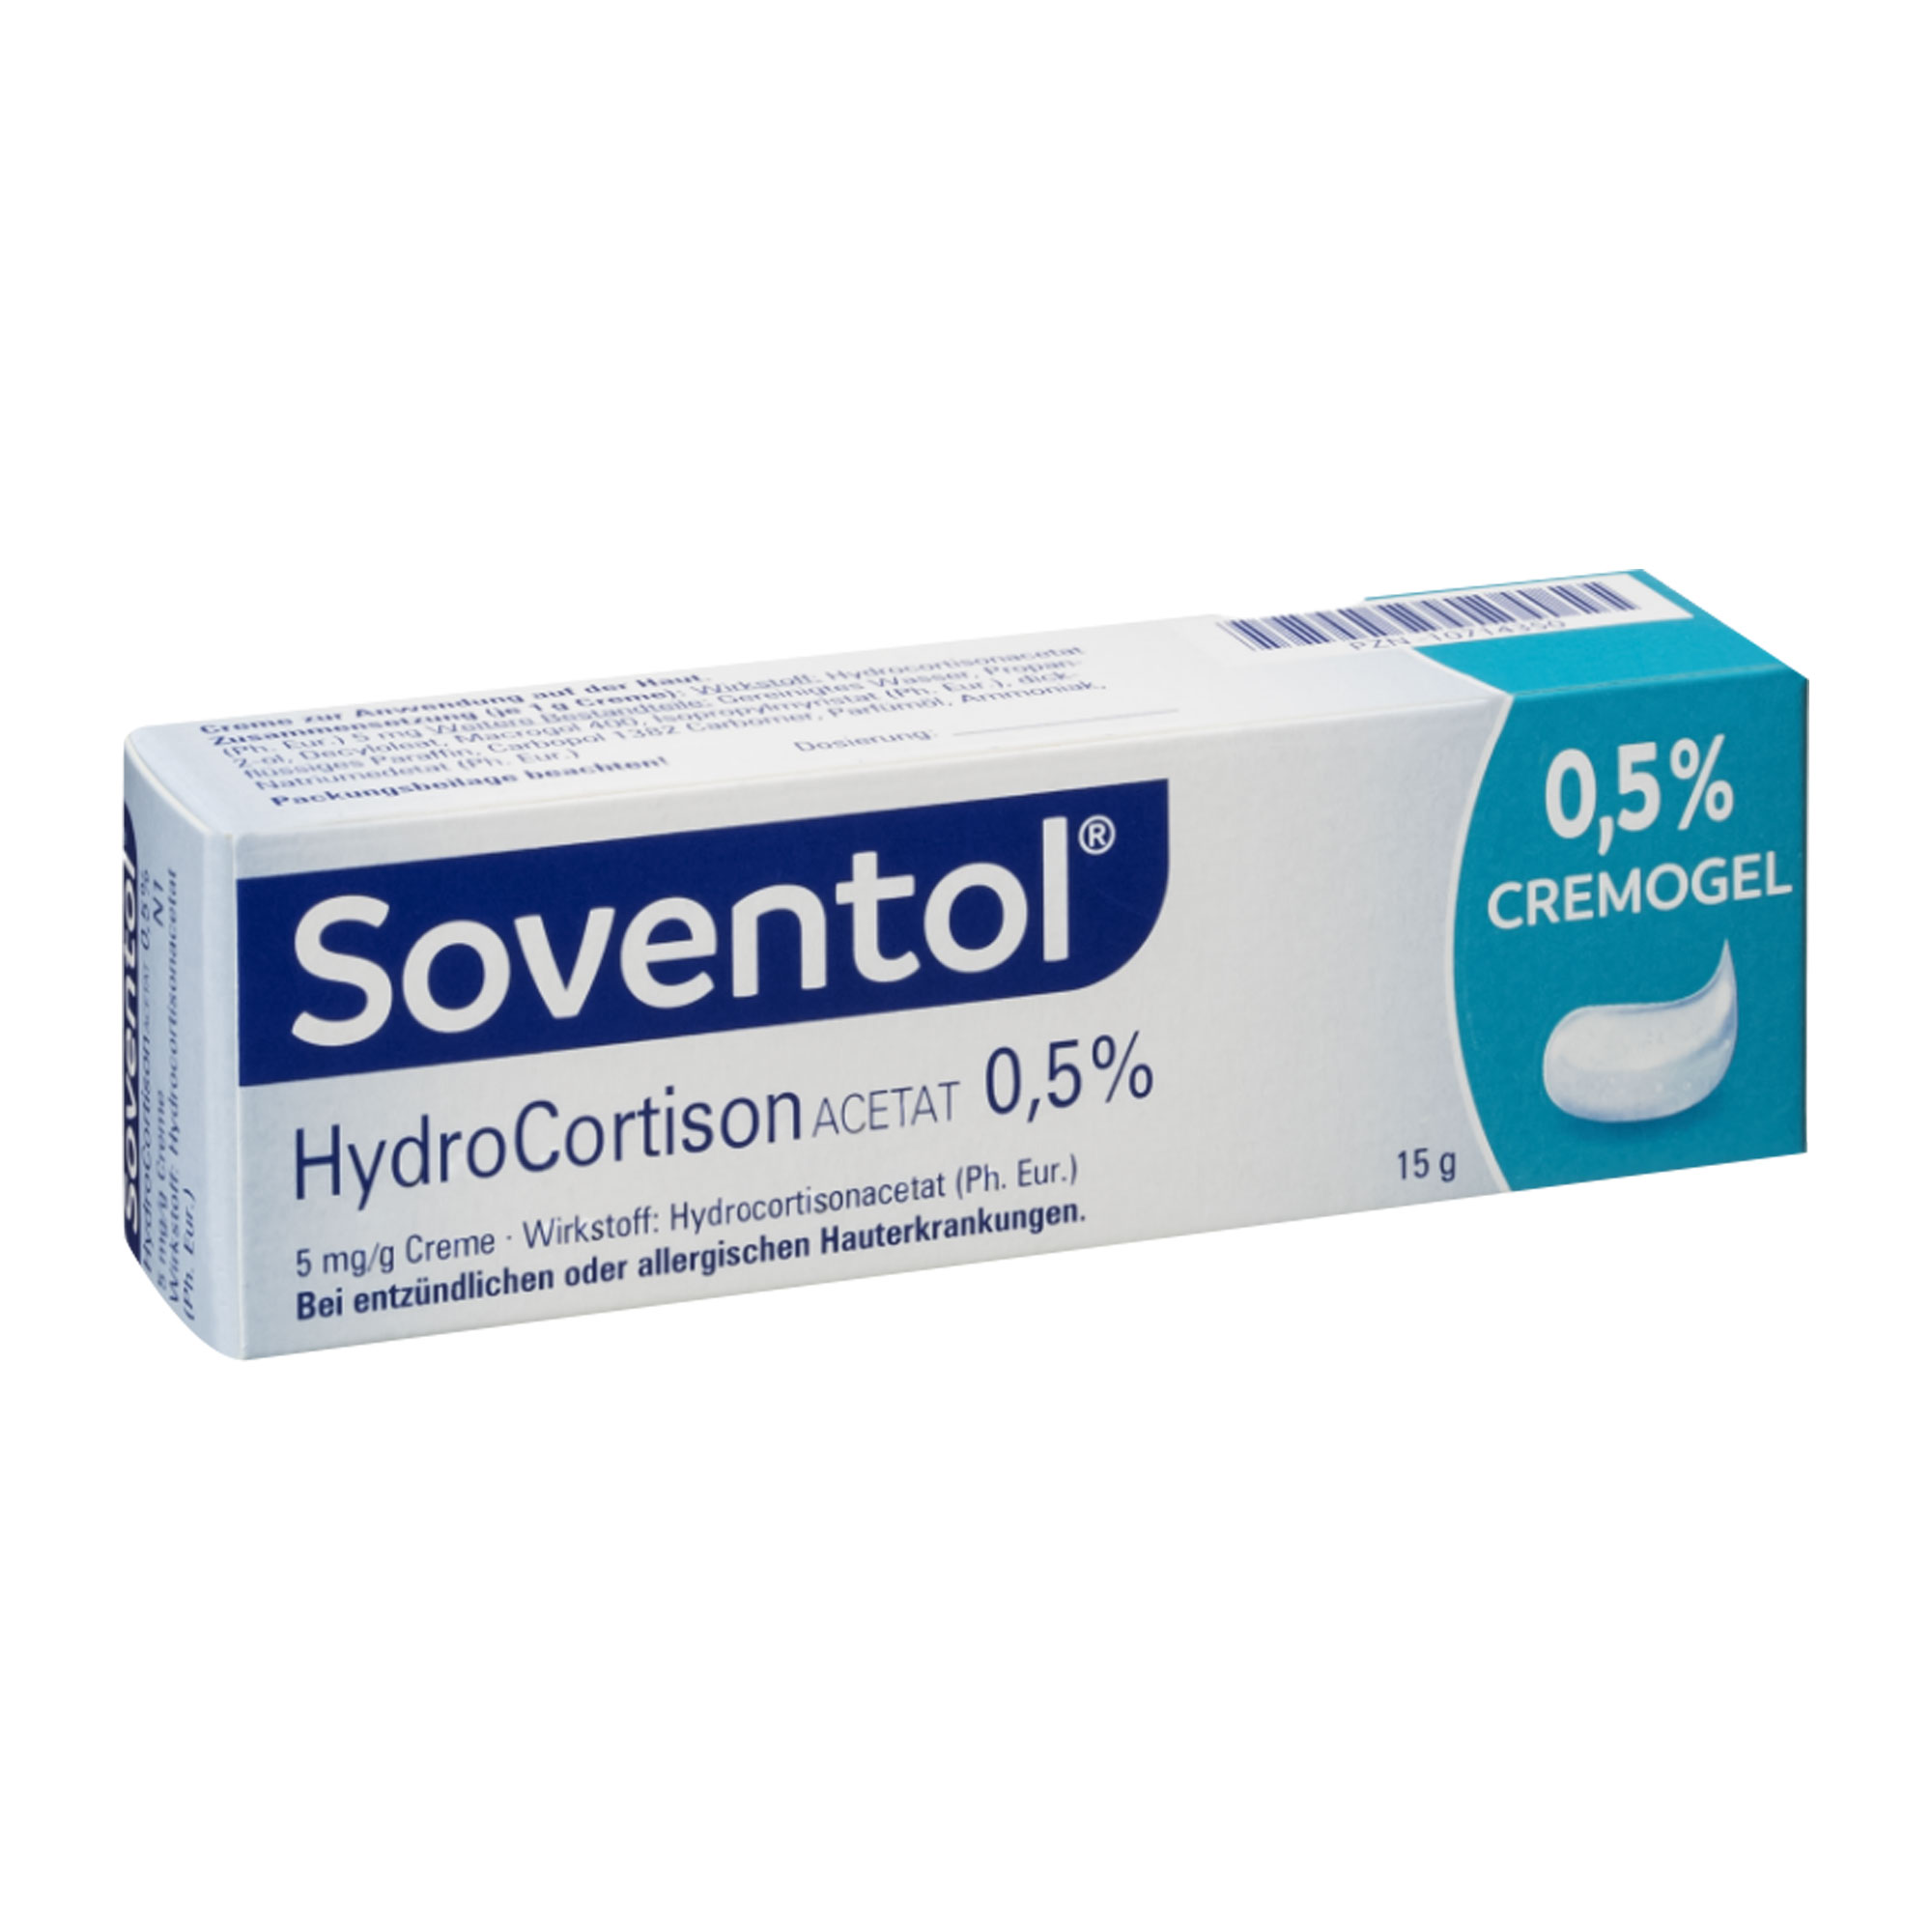 Soventol Hydrocortisonacetat 0,5 % Creme Umverpackung